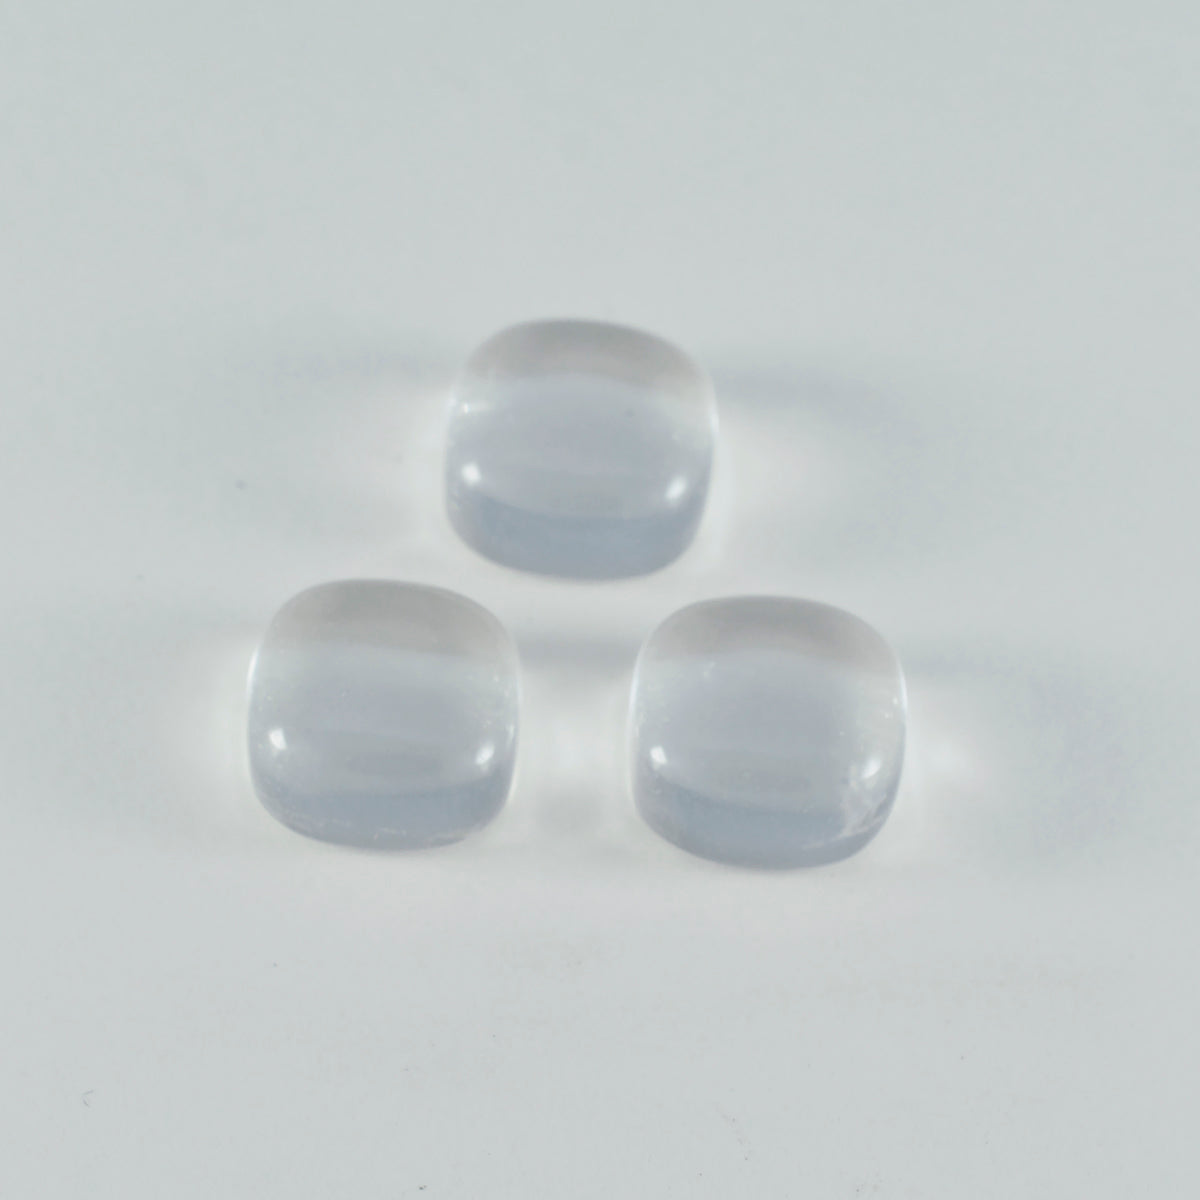 riyogems 1 шт. кабошон из белого кристалла кварца 8x8 мм в форме подушки, красивое качество, свободные драгоценные камни